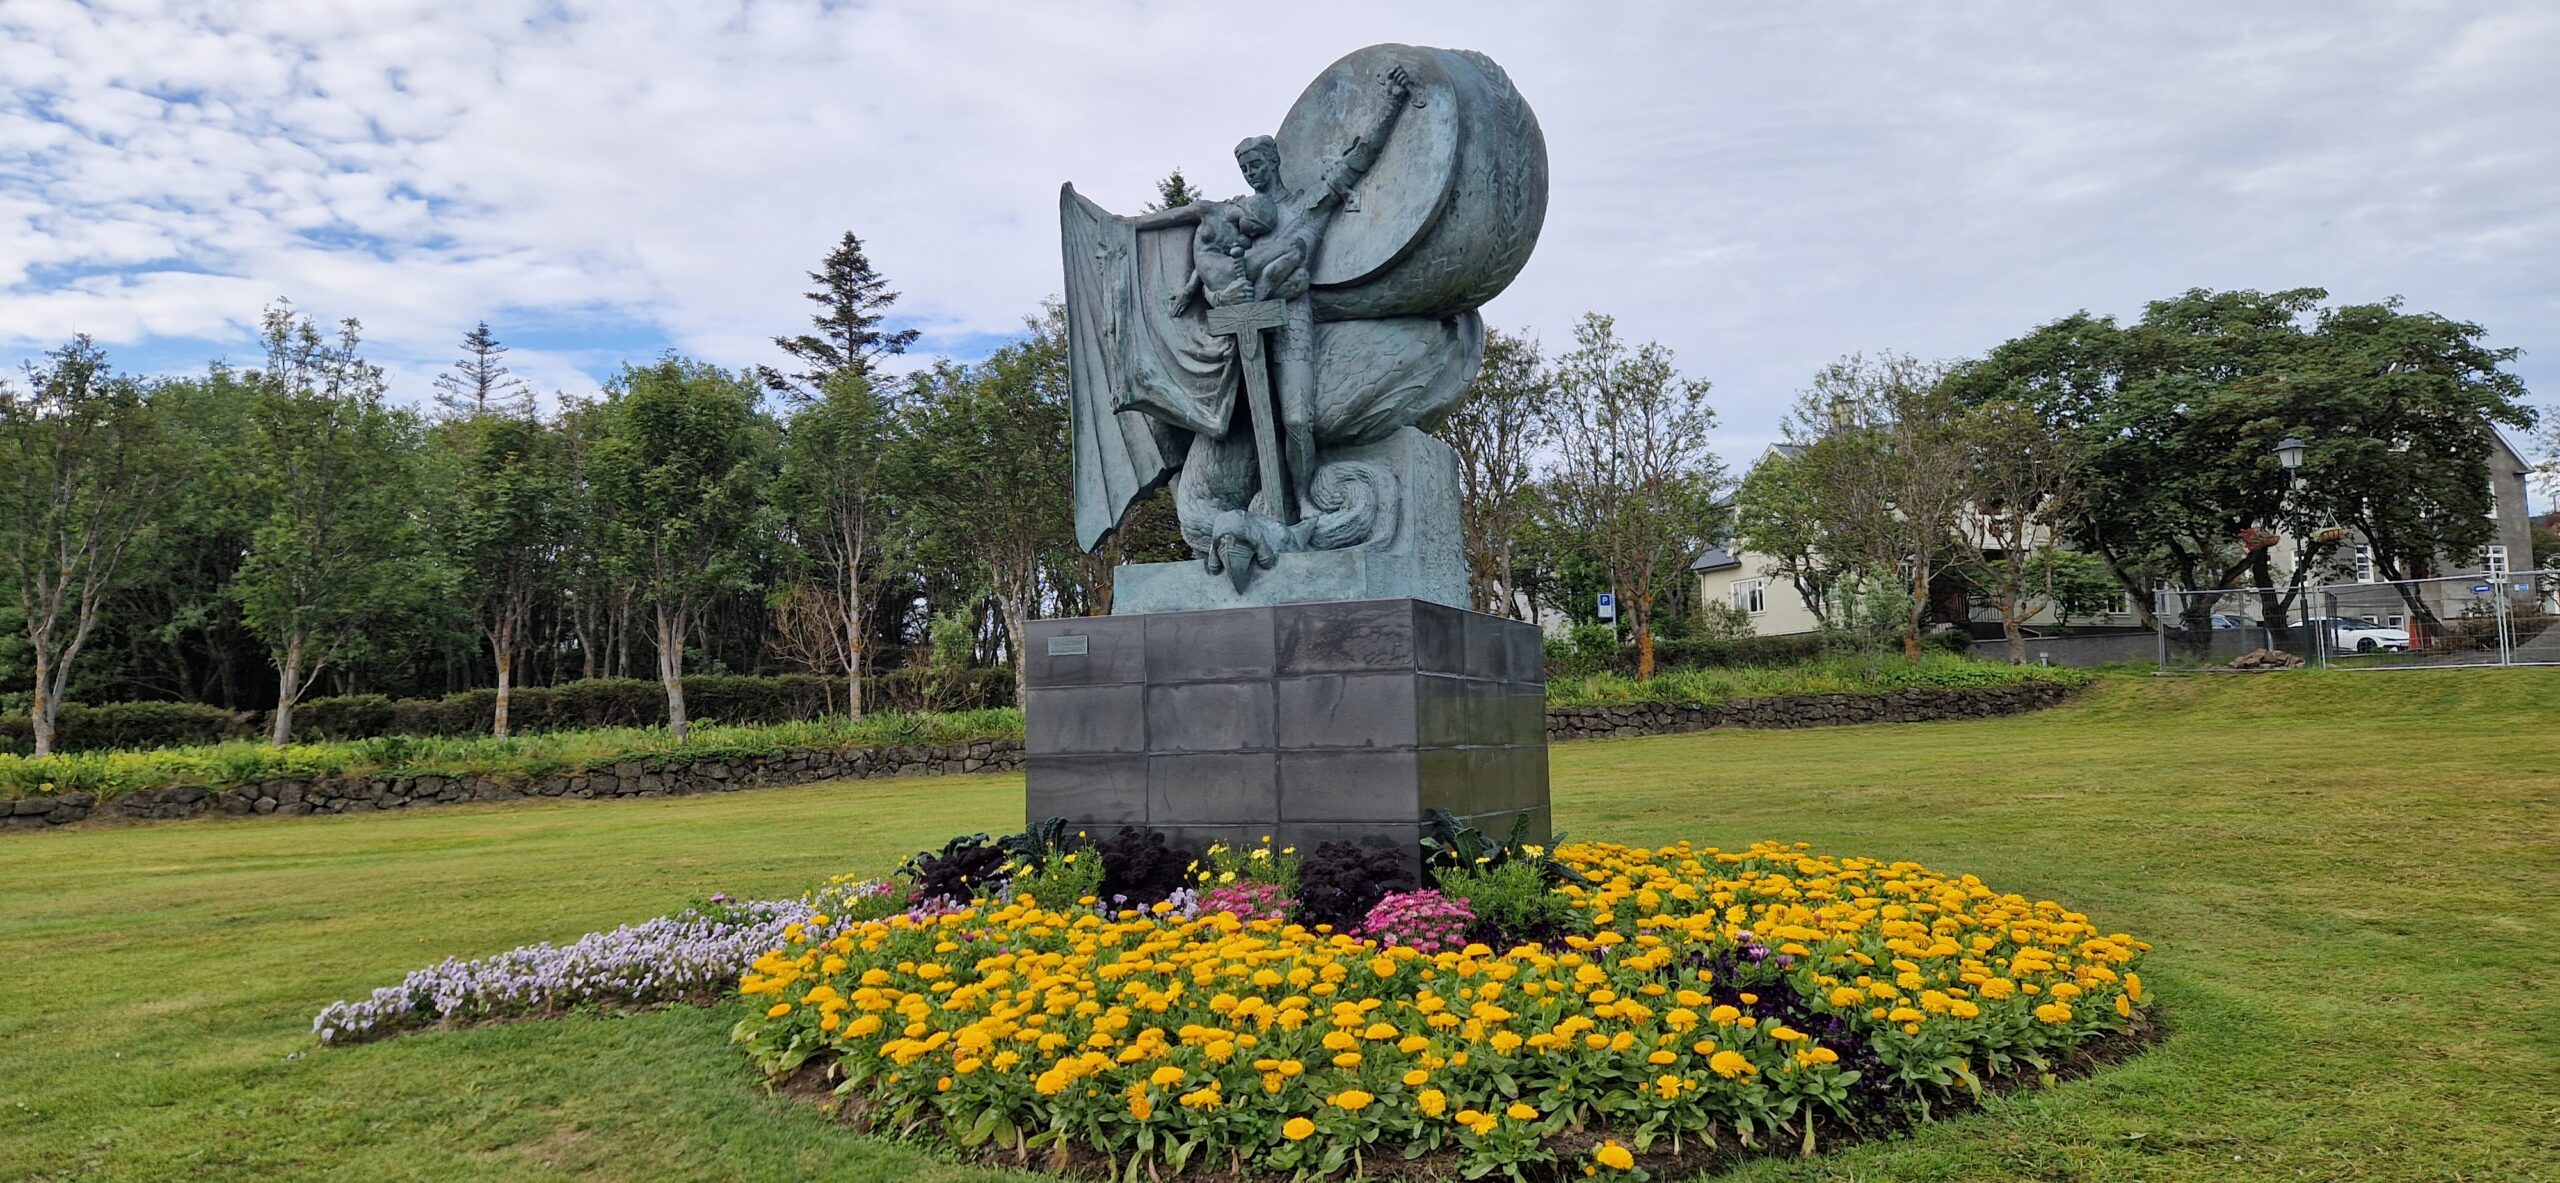 Sculpture at Reykjavik Pond